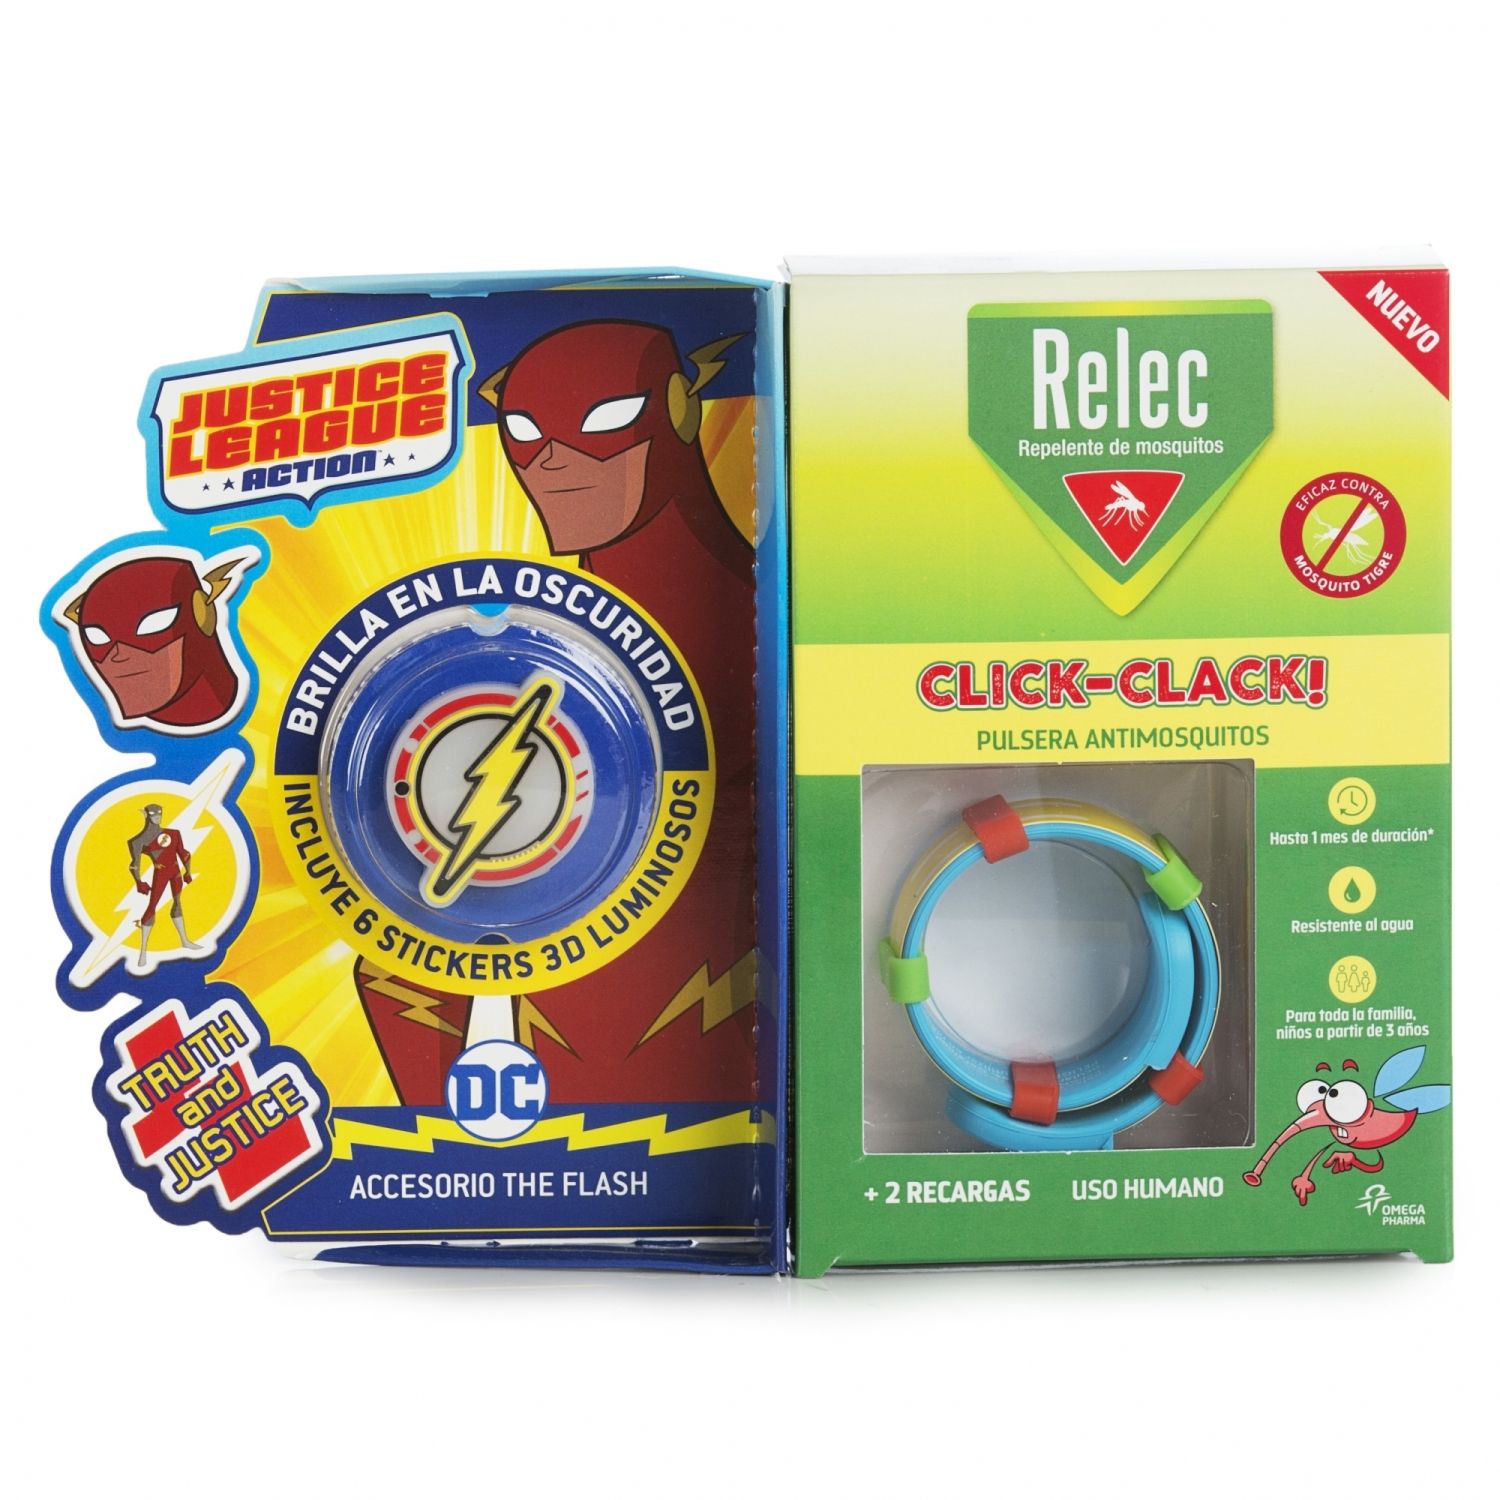 relec pulsera antimosquitos click clack flash